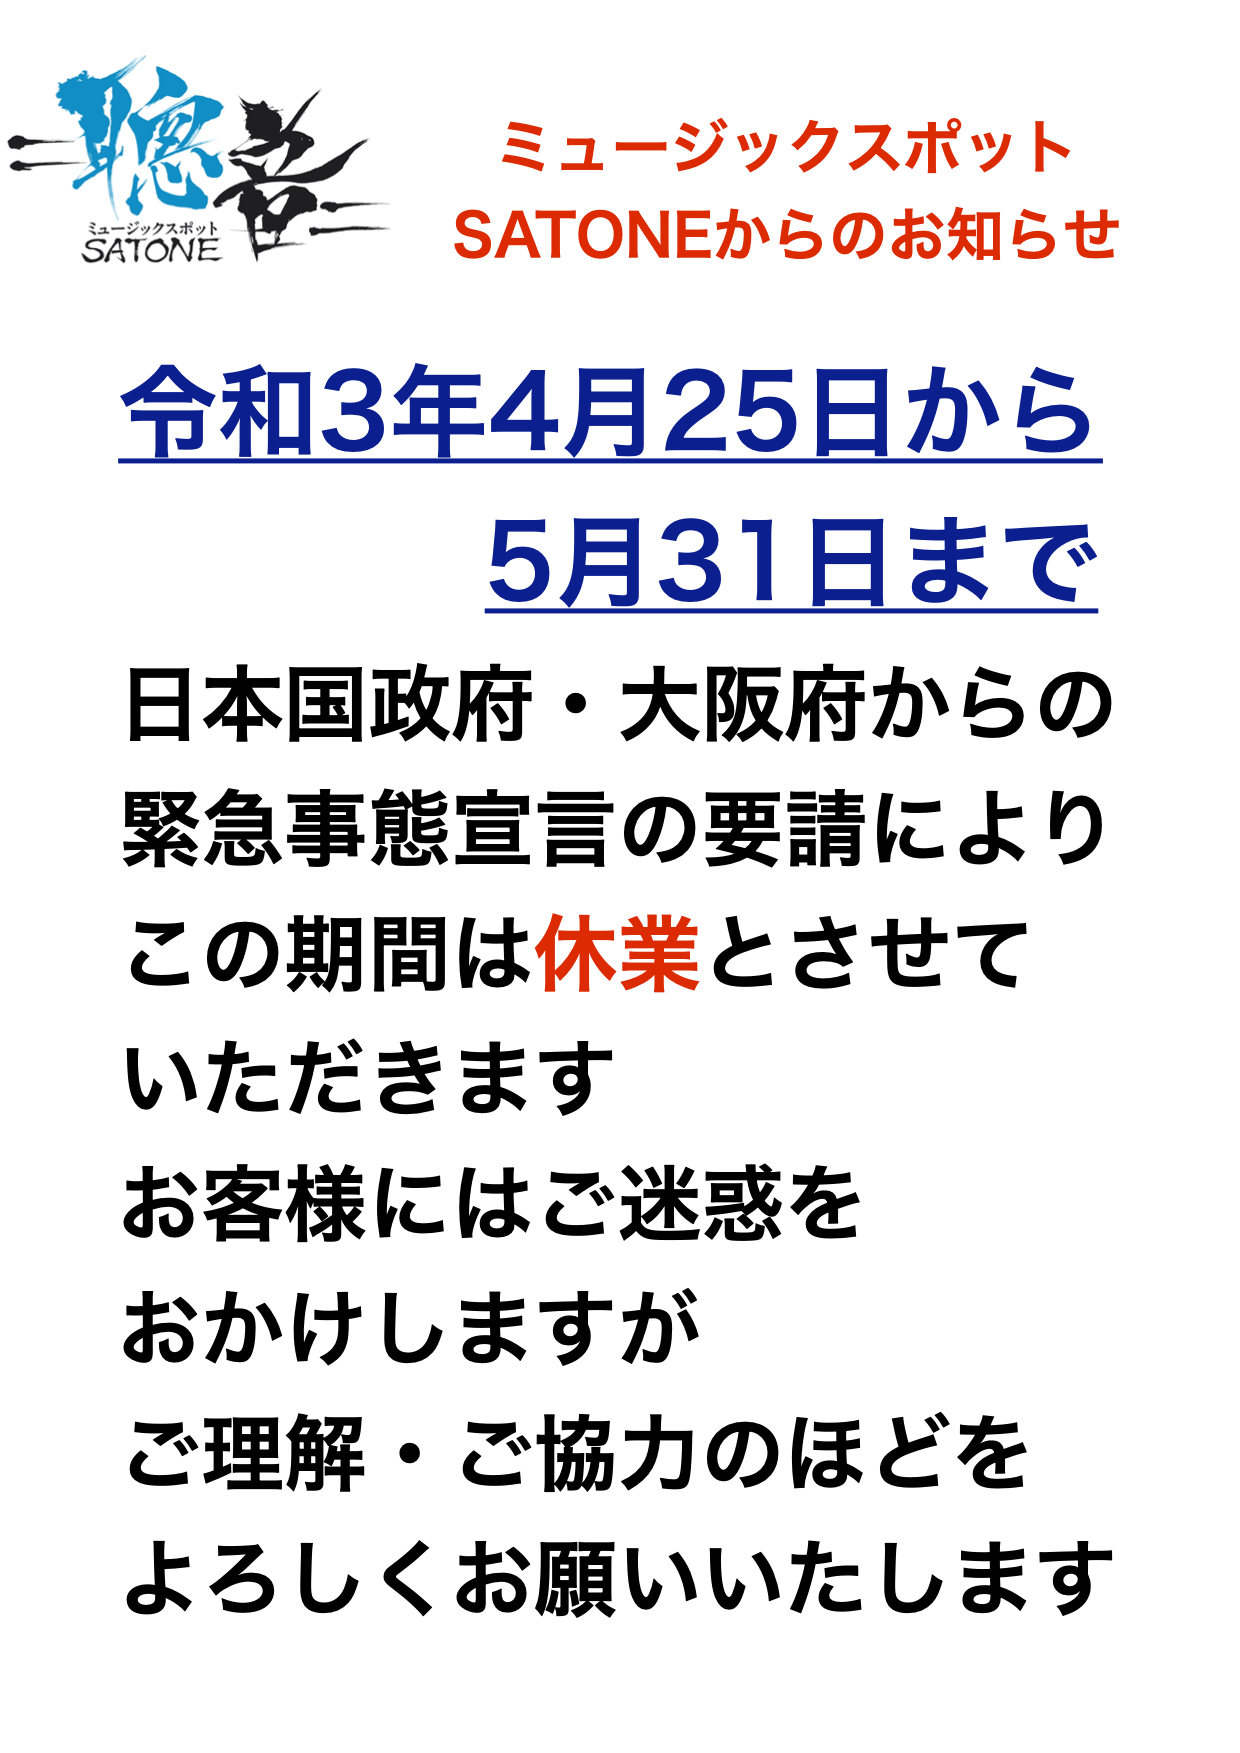 令和3年5月31日まで日本国政府・大阪府より新型コロナ感染症『緊急事態宣言』発令延長の要請に従い、この期間のライブ営業を休業いたします